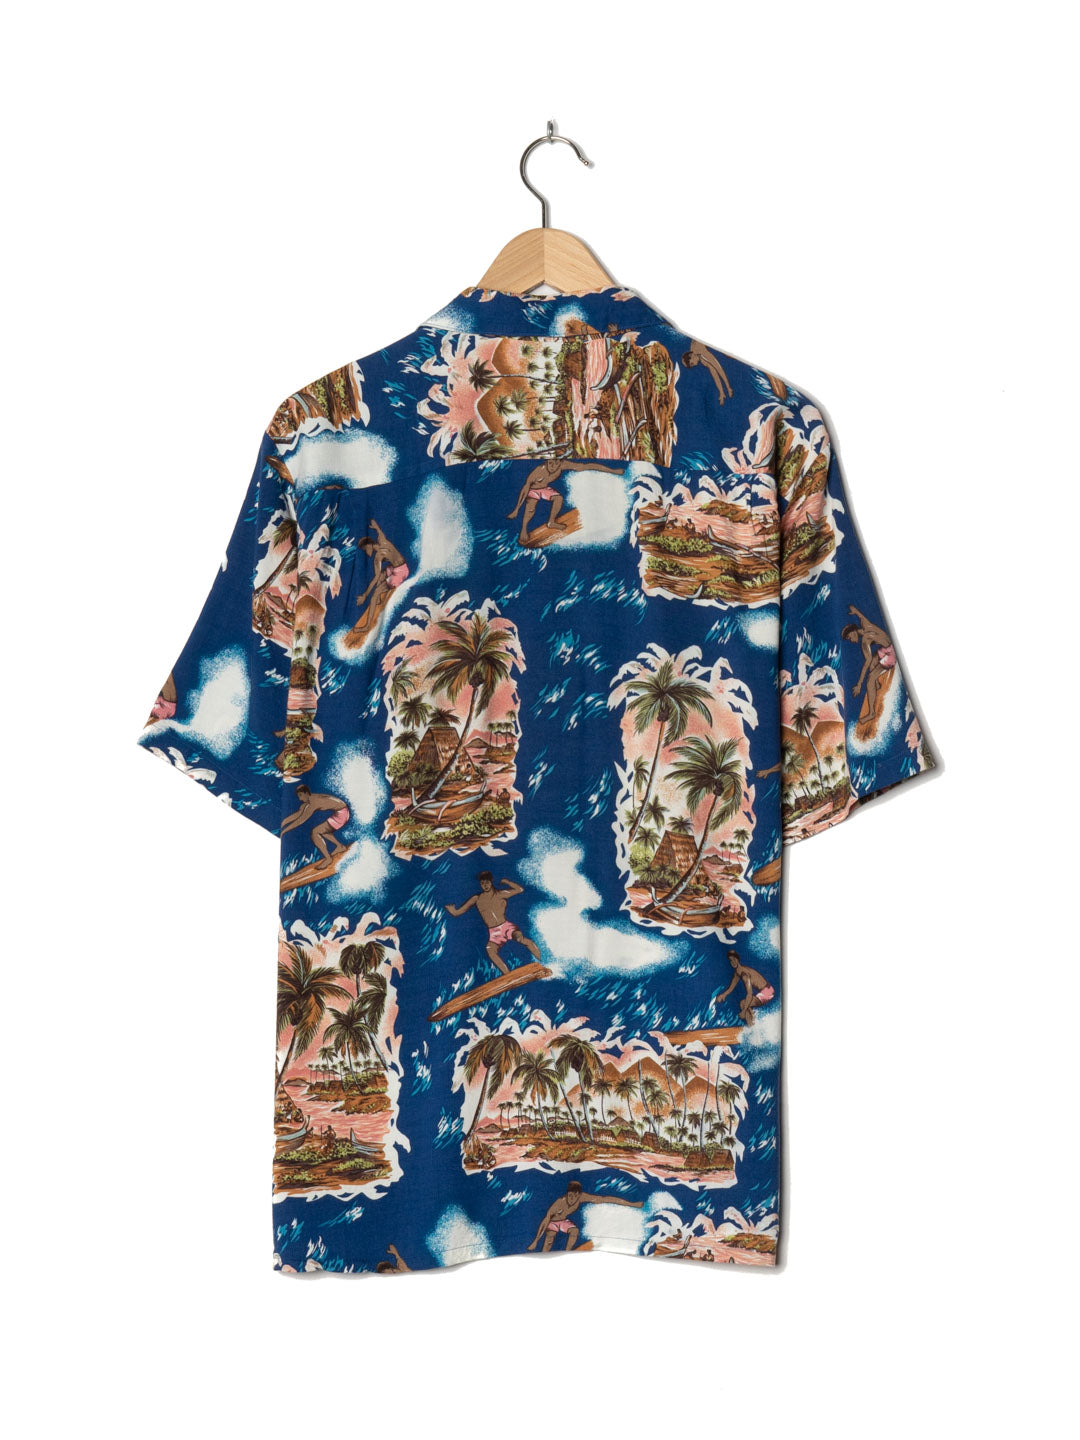 Joe Kealuha's Mixed Colours Hawaiian Shirt